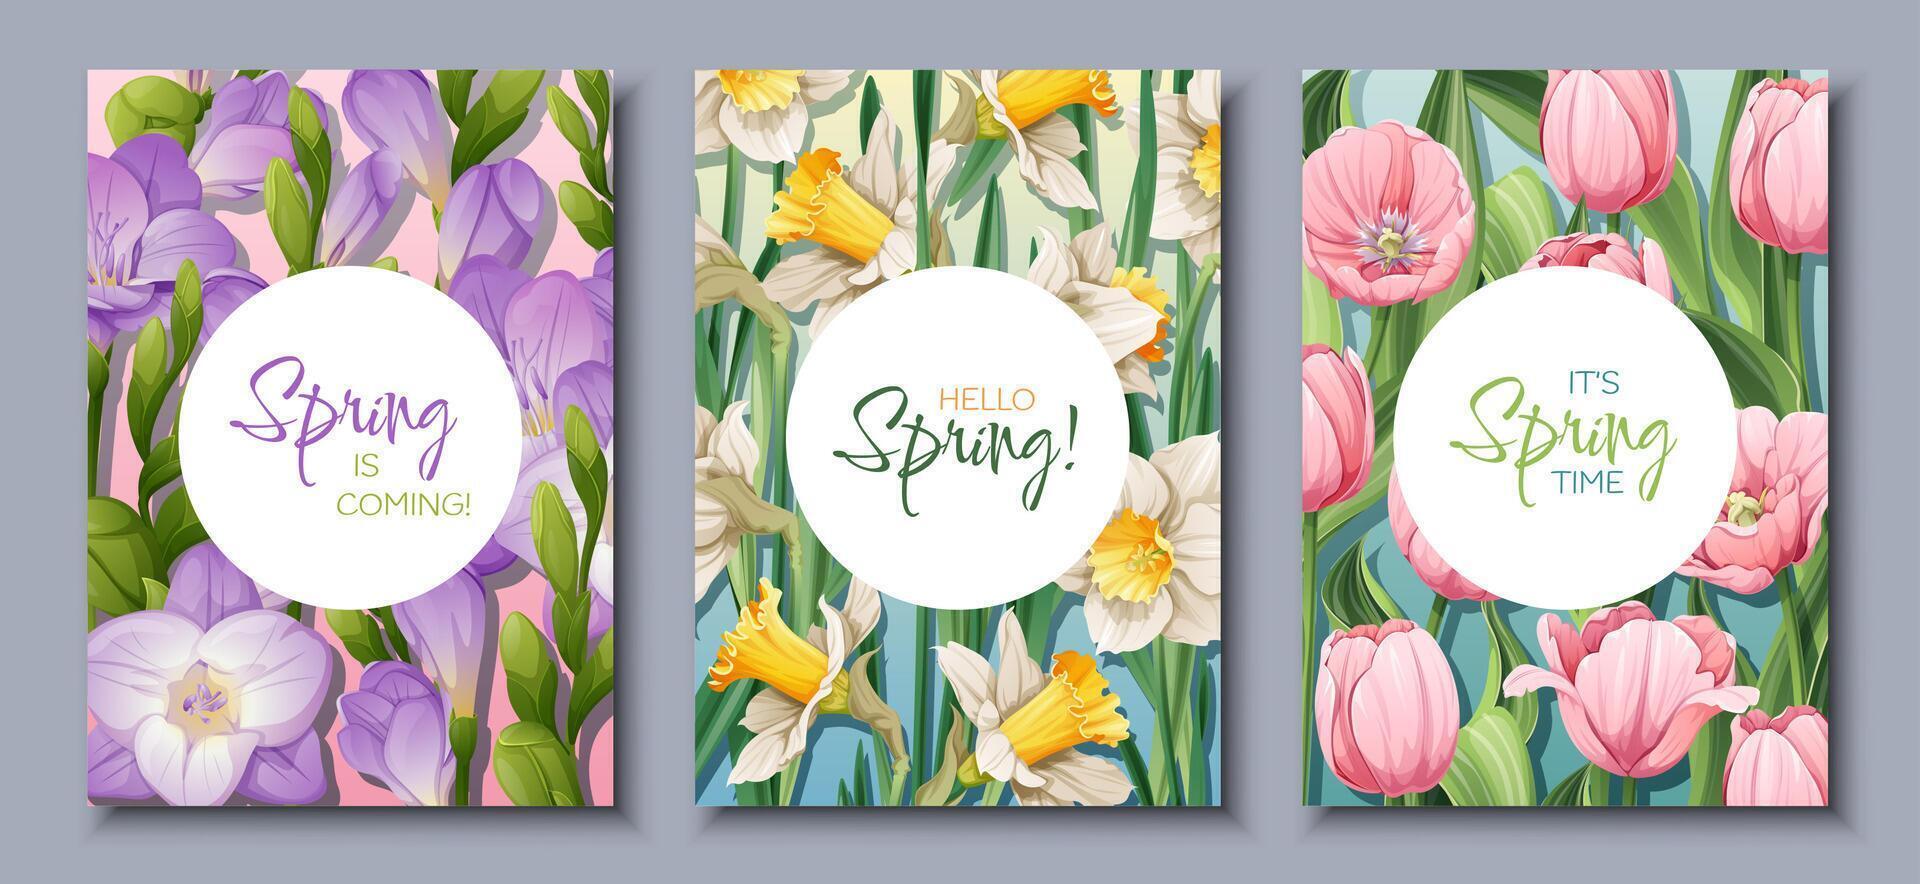 voorjaar is in de buurt met mooi bloem regelingen Aan drie kaarten vector